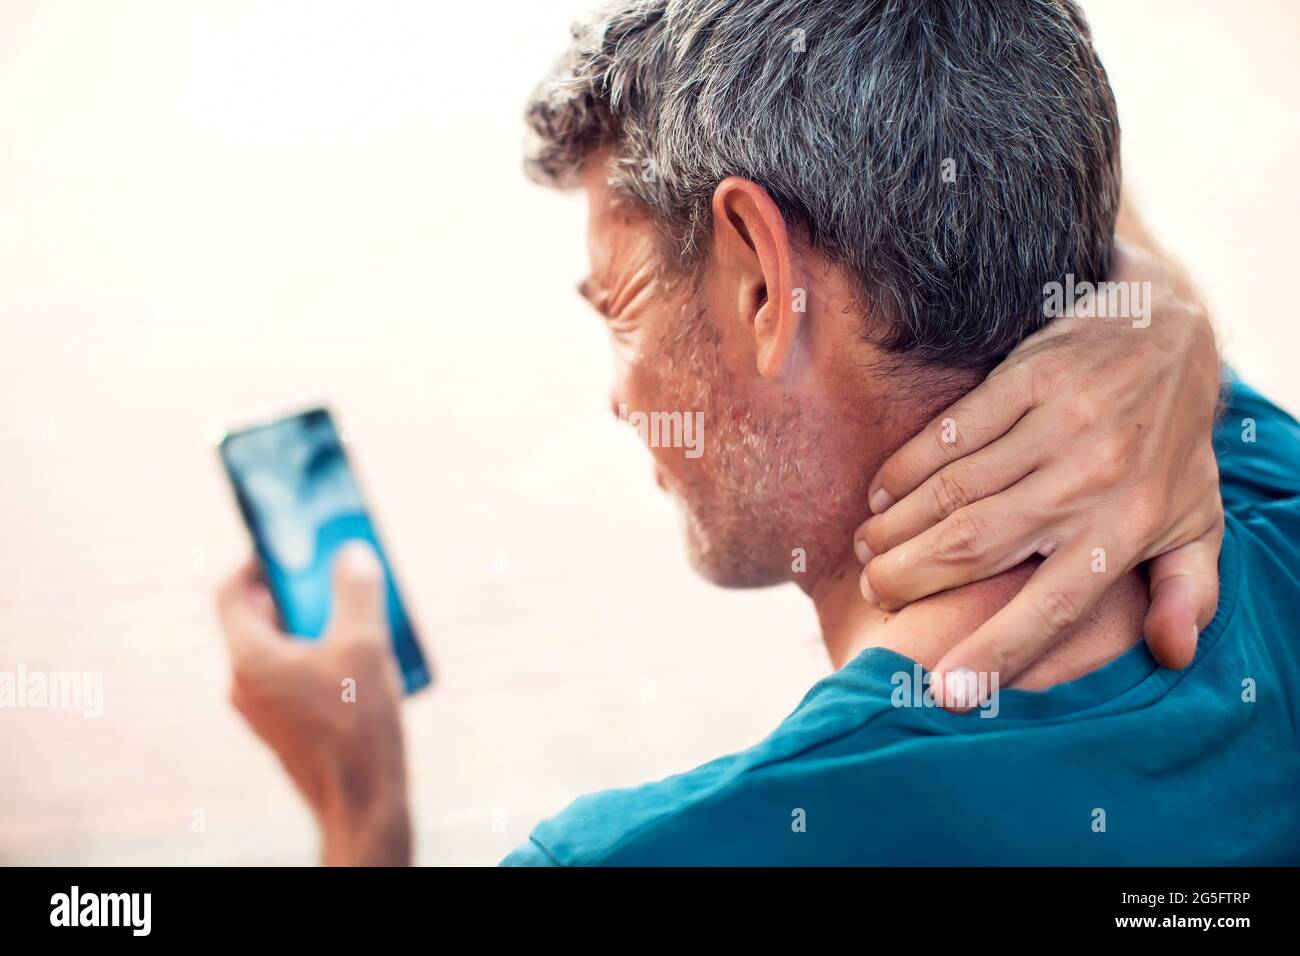 Dolor de cuello con el smartphone al aire libre. Concepto de salud, estilo de vida y tecnología Foto de stock